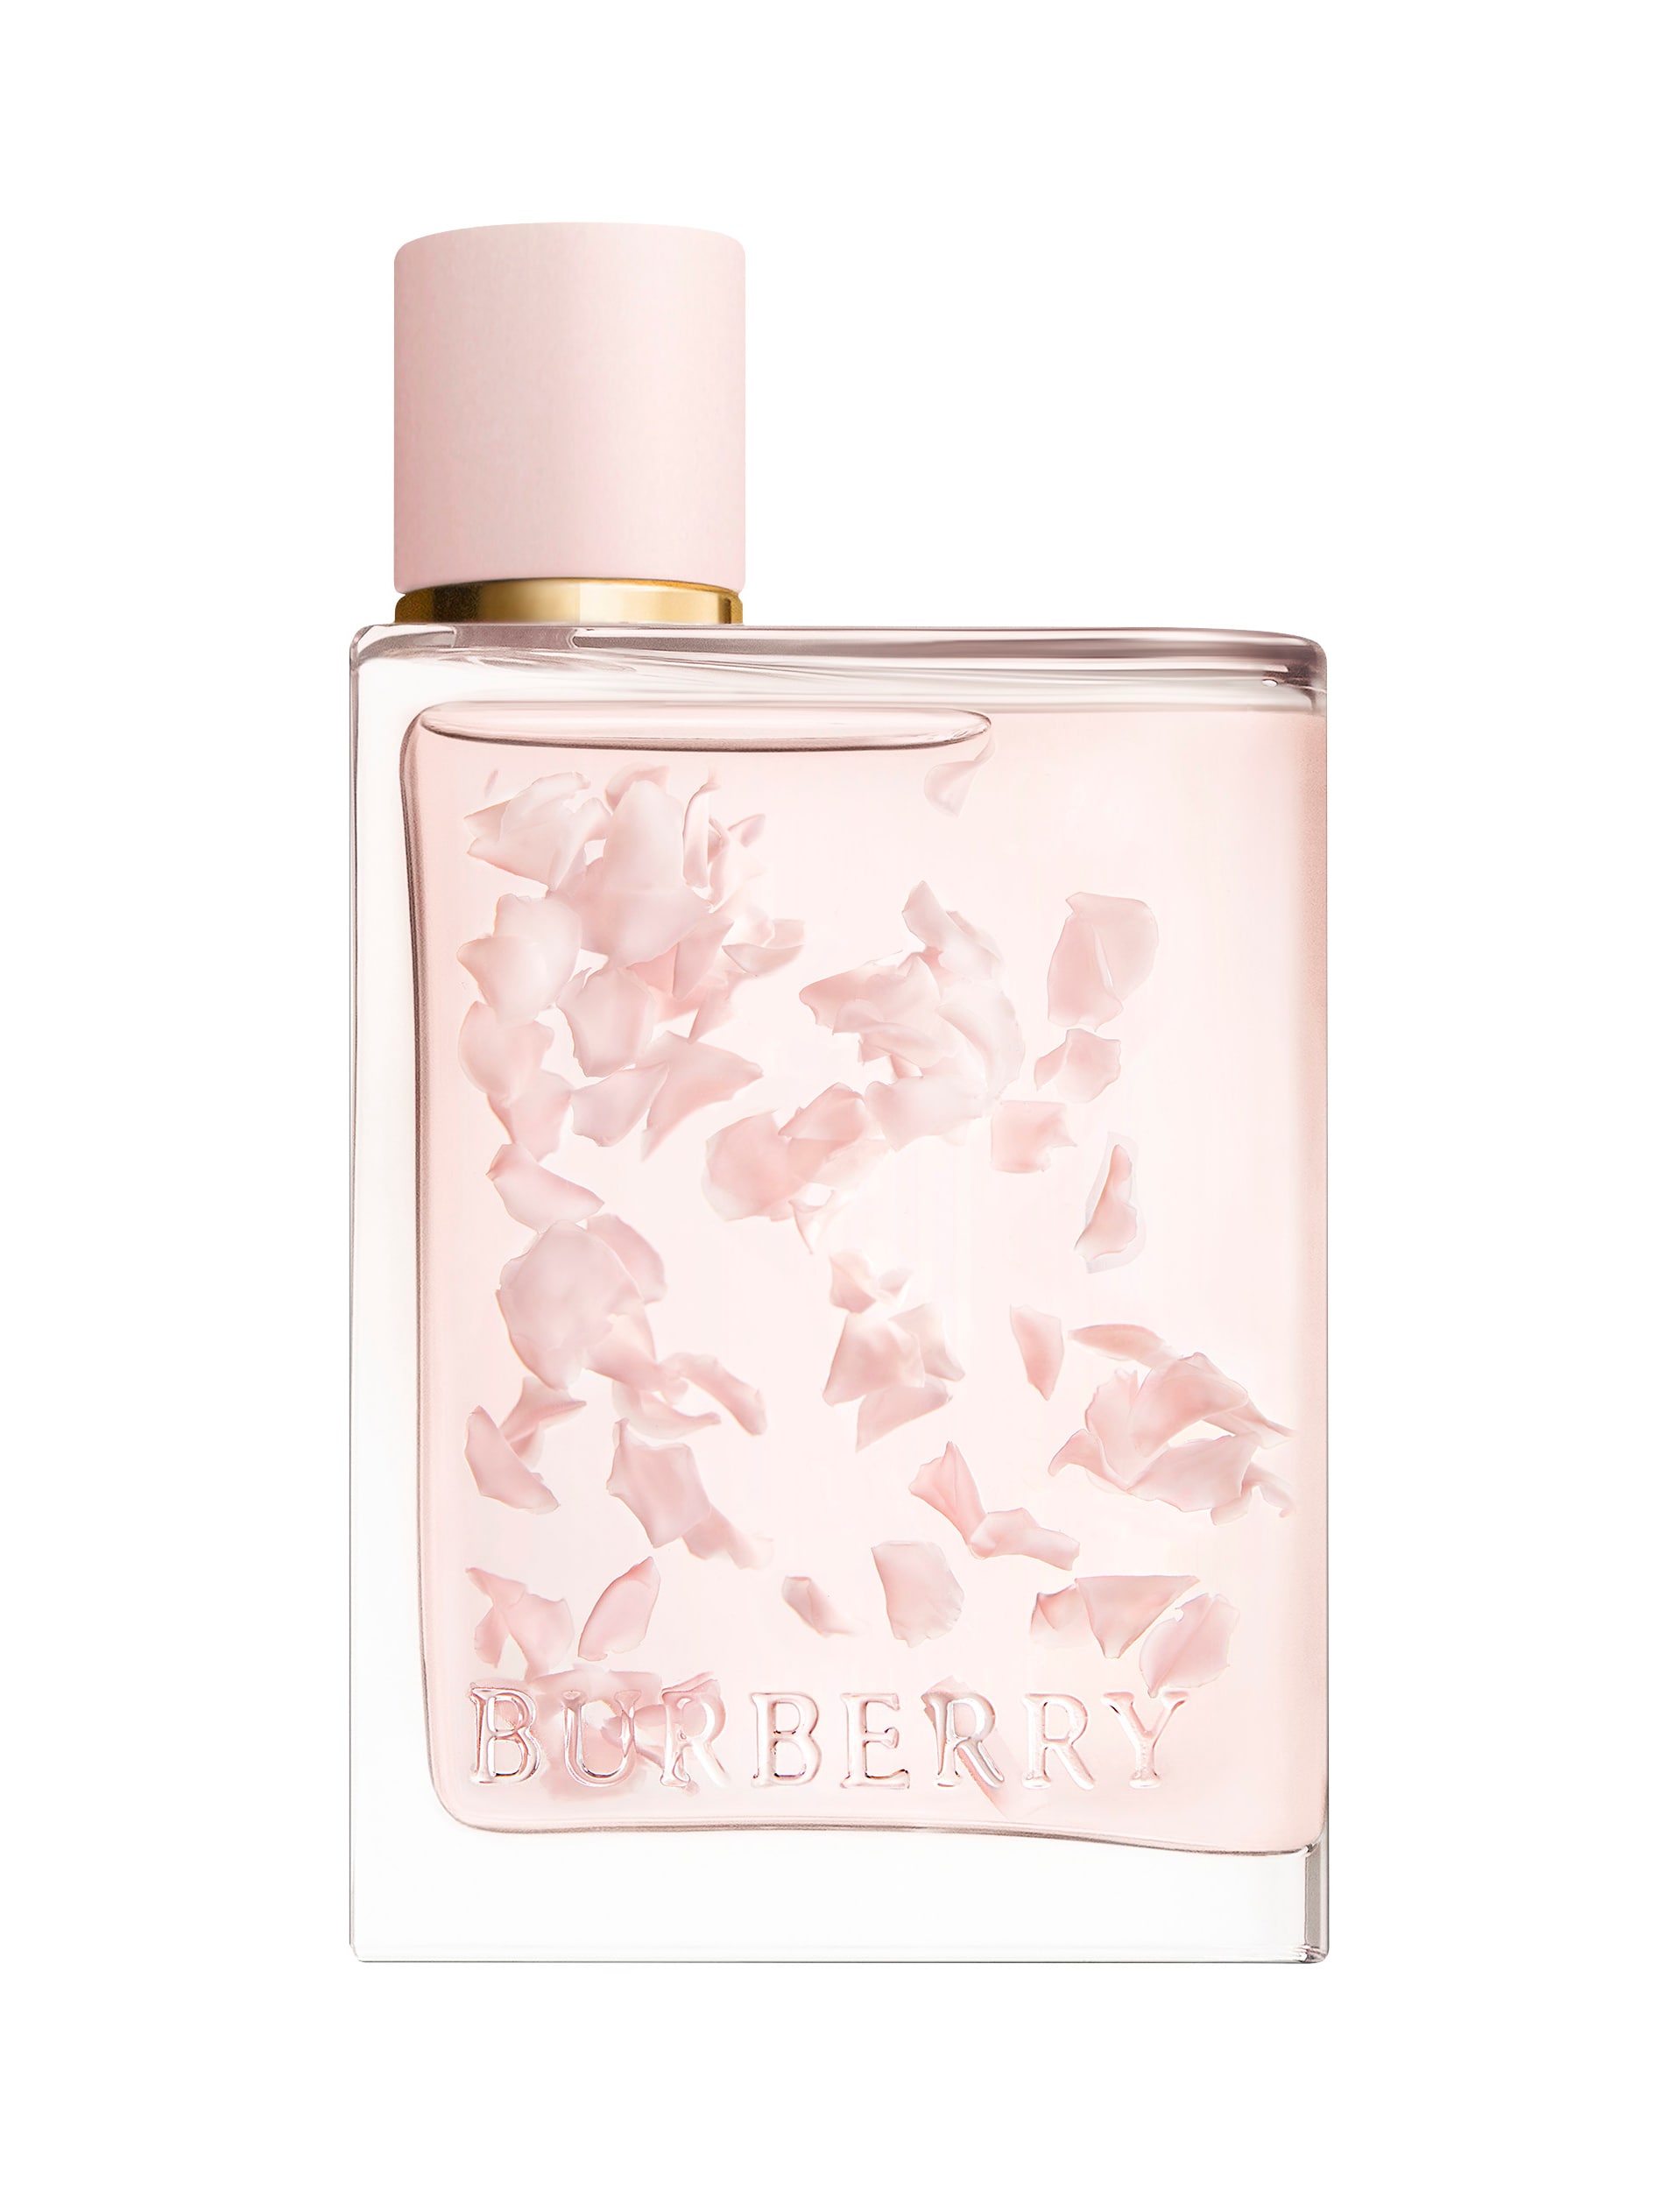 Burberry Her Eau De Parfum Petals Limited Edition 88ml product photo